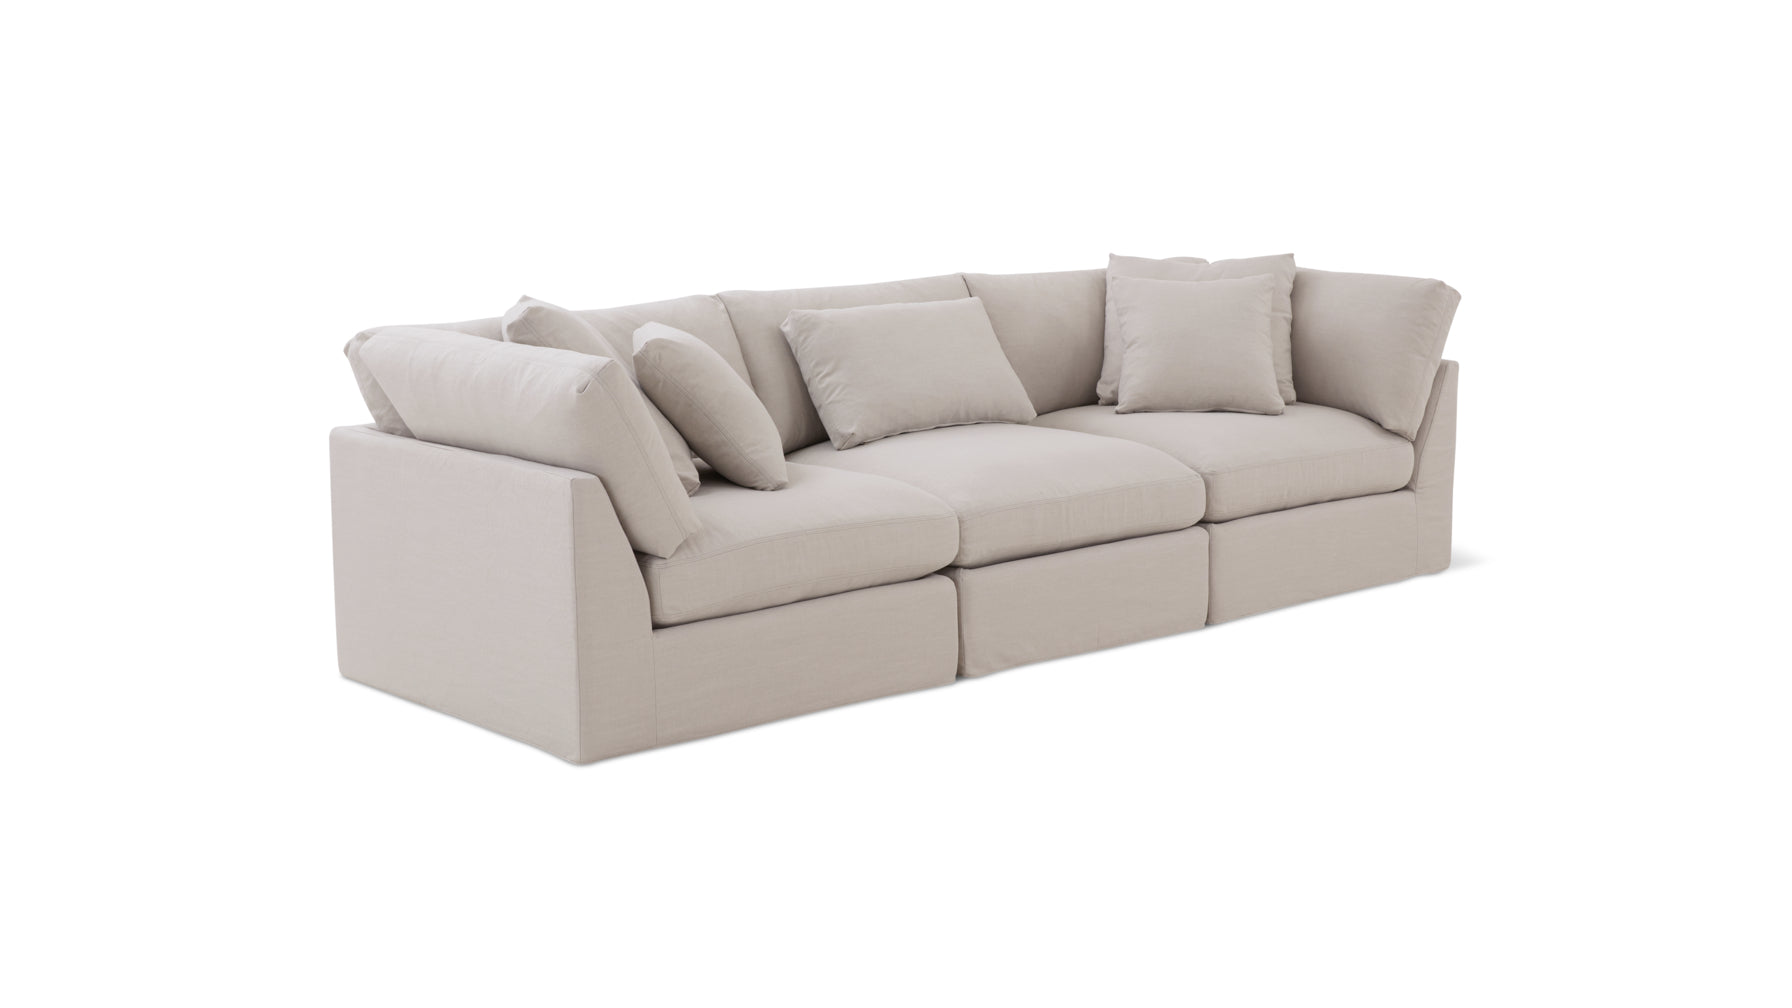 Get Together™ 3-Piece Modular Sofa, Large, Clay - Image 3